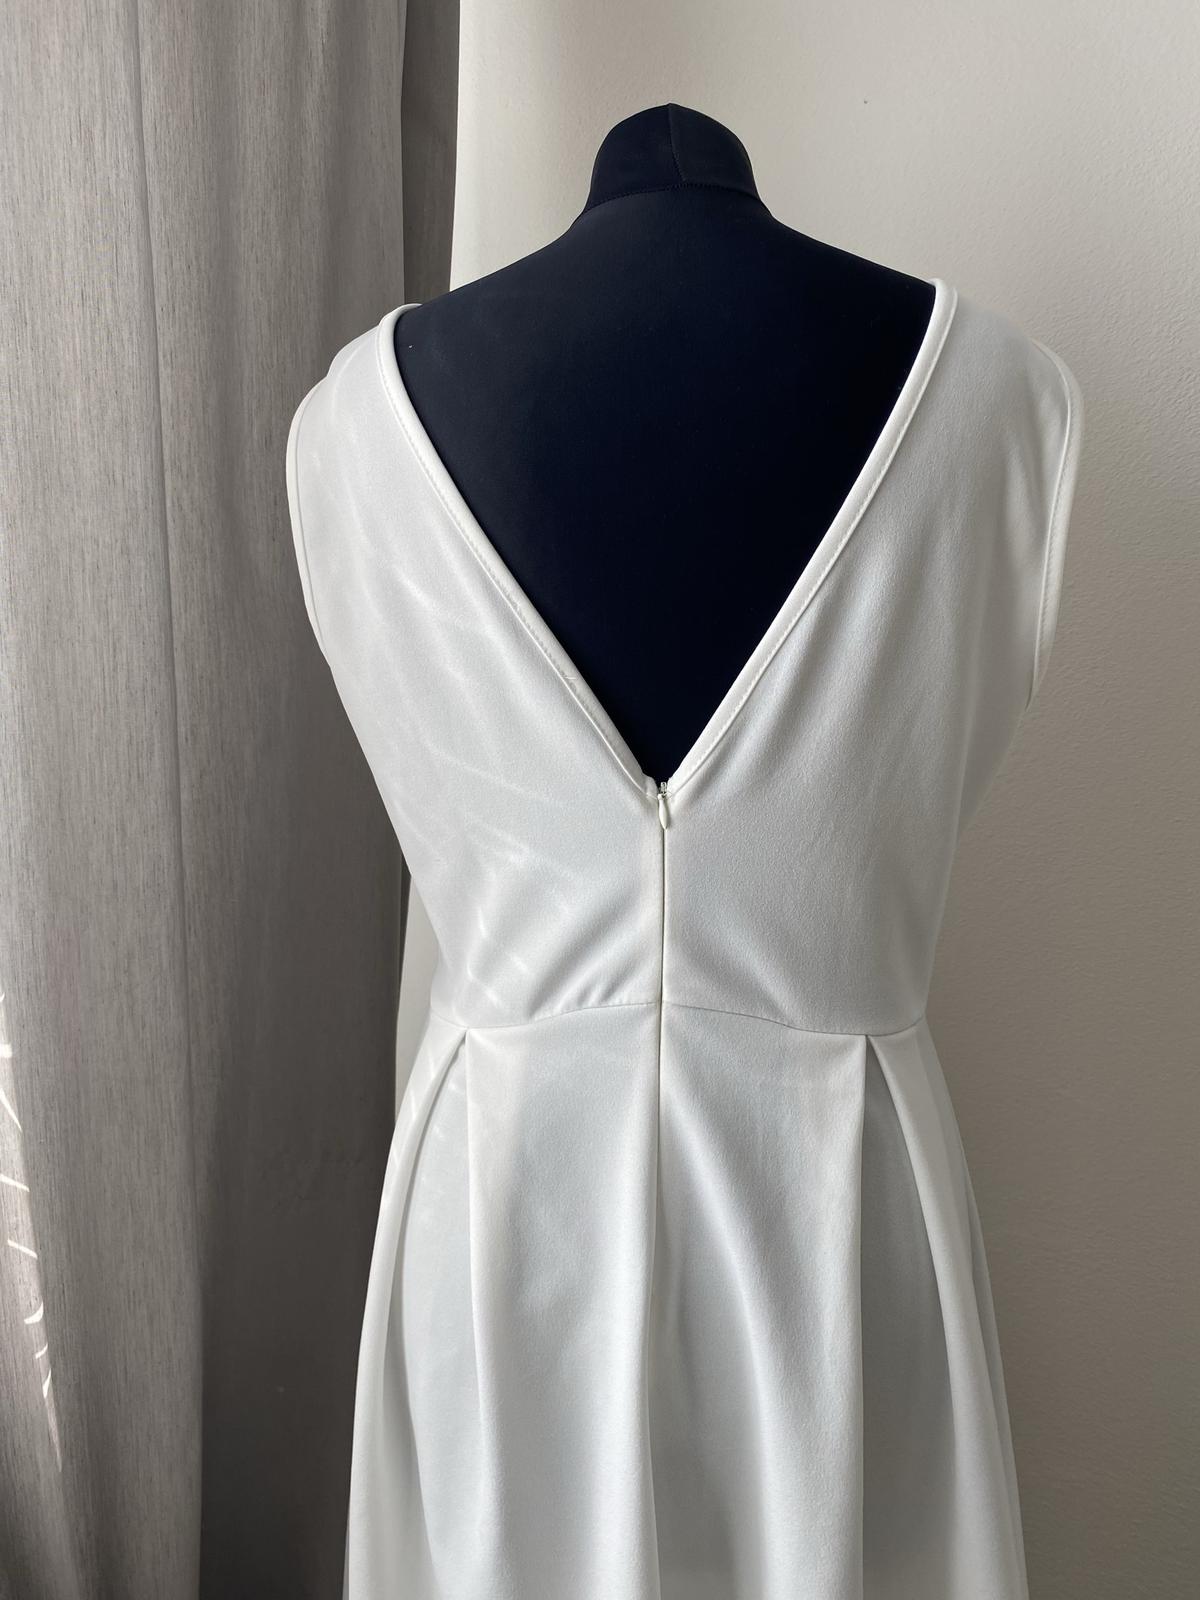 Bílé krajkové šaty - Obrázek č. 2